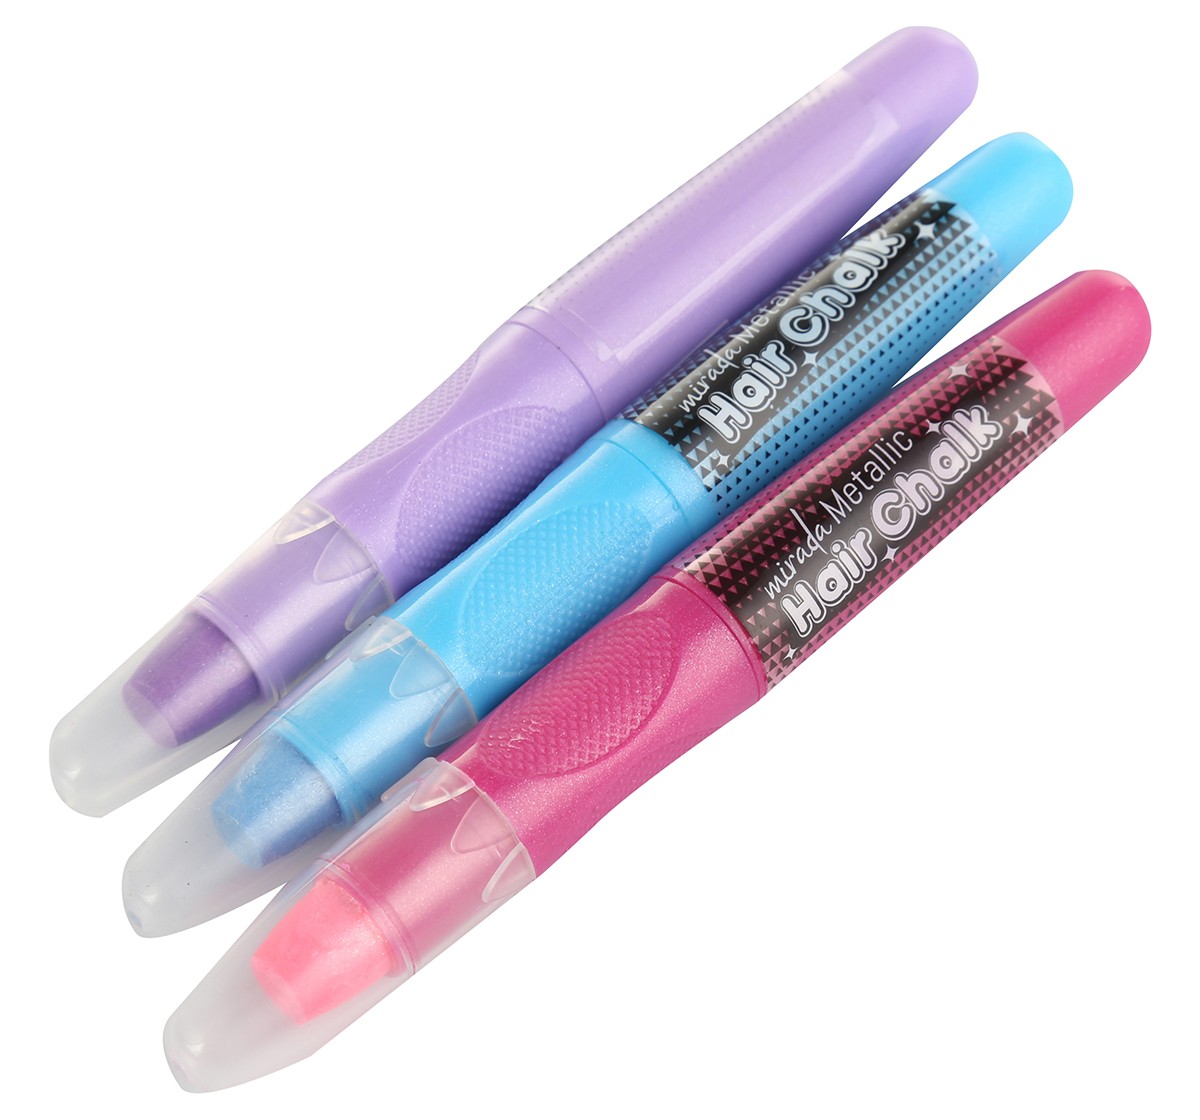 Mirada Metallic hair chalk pen Multicolor 6Y+